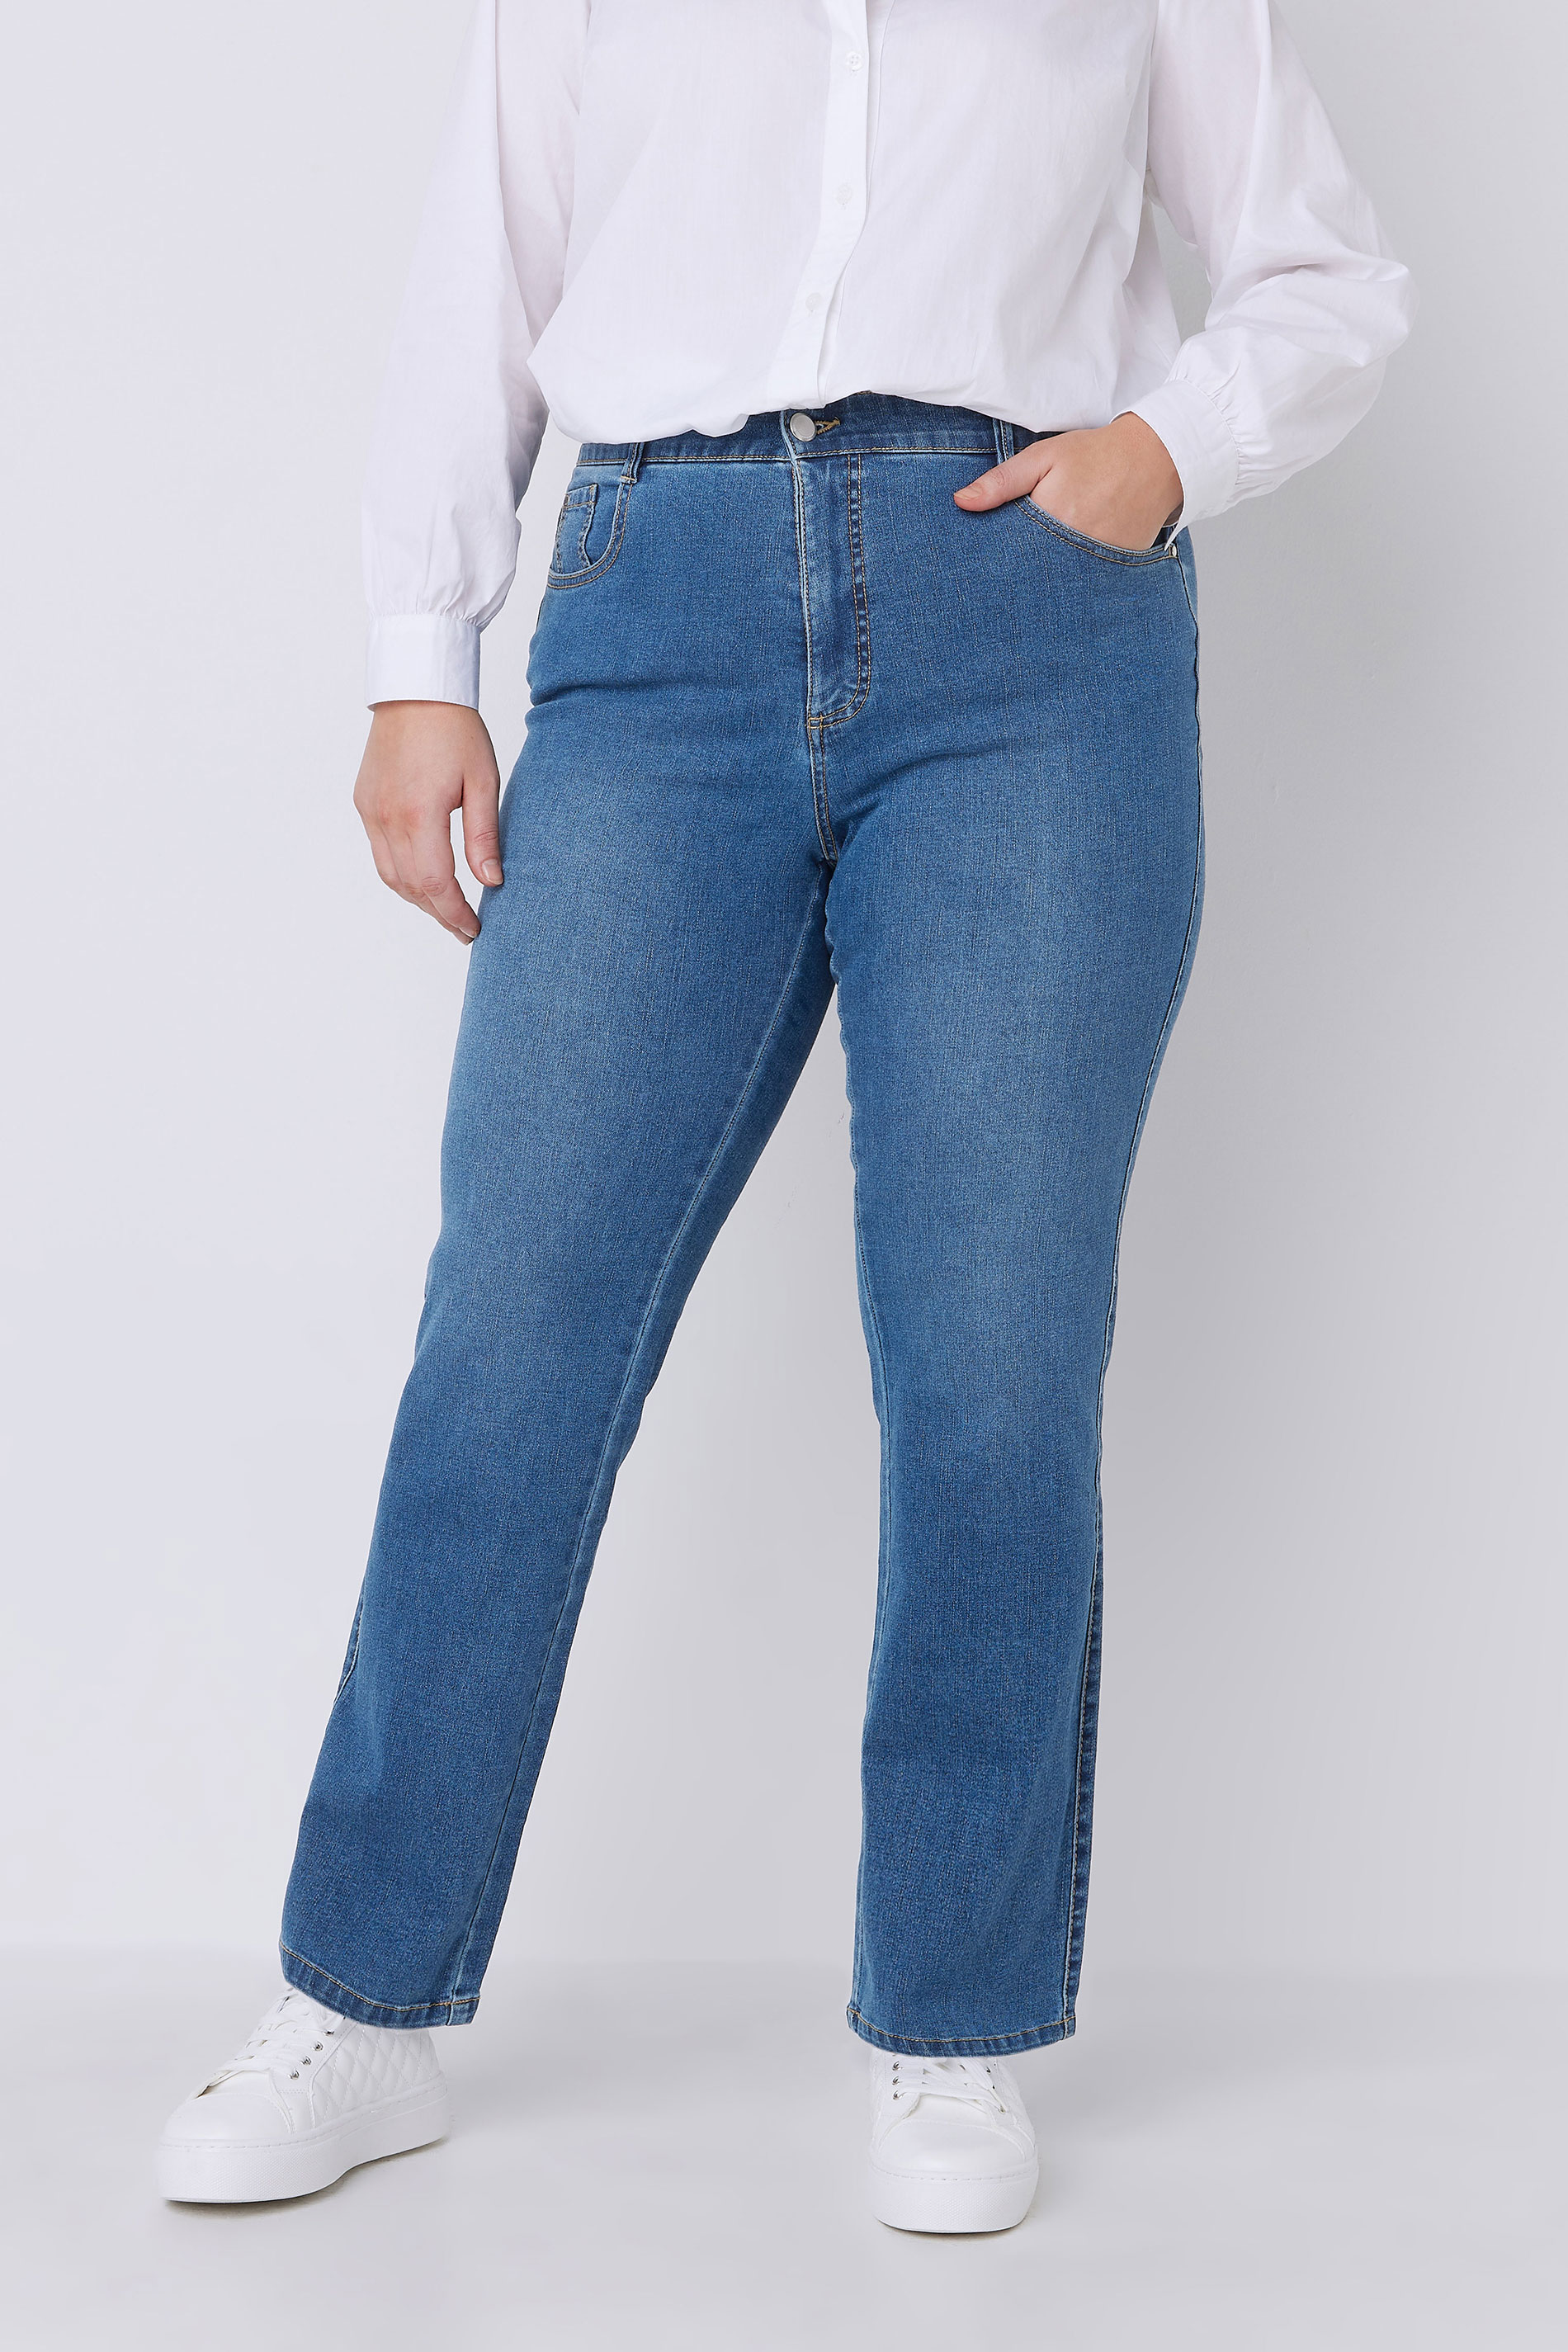 EVANS Plus Size Curve Fit Blue Mid Wash Straight Leg Jeans | Evans 1